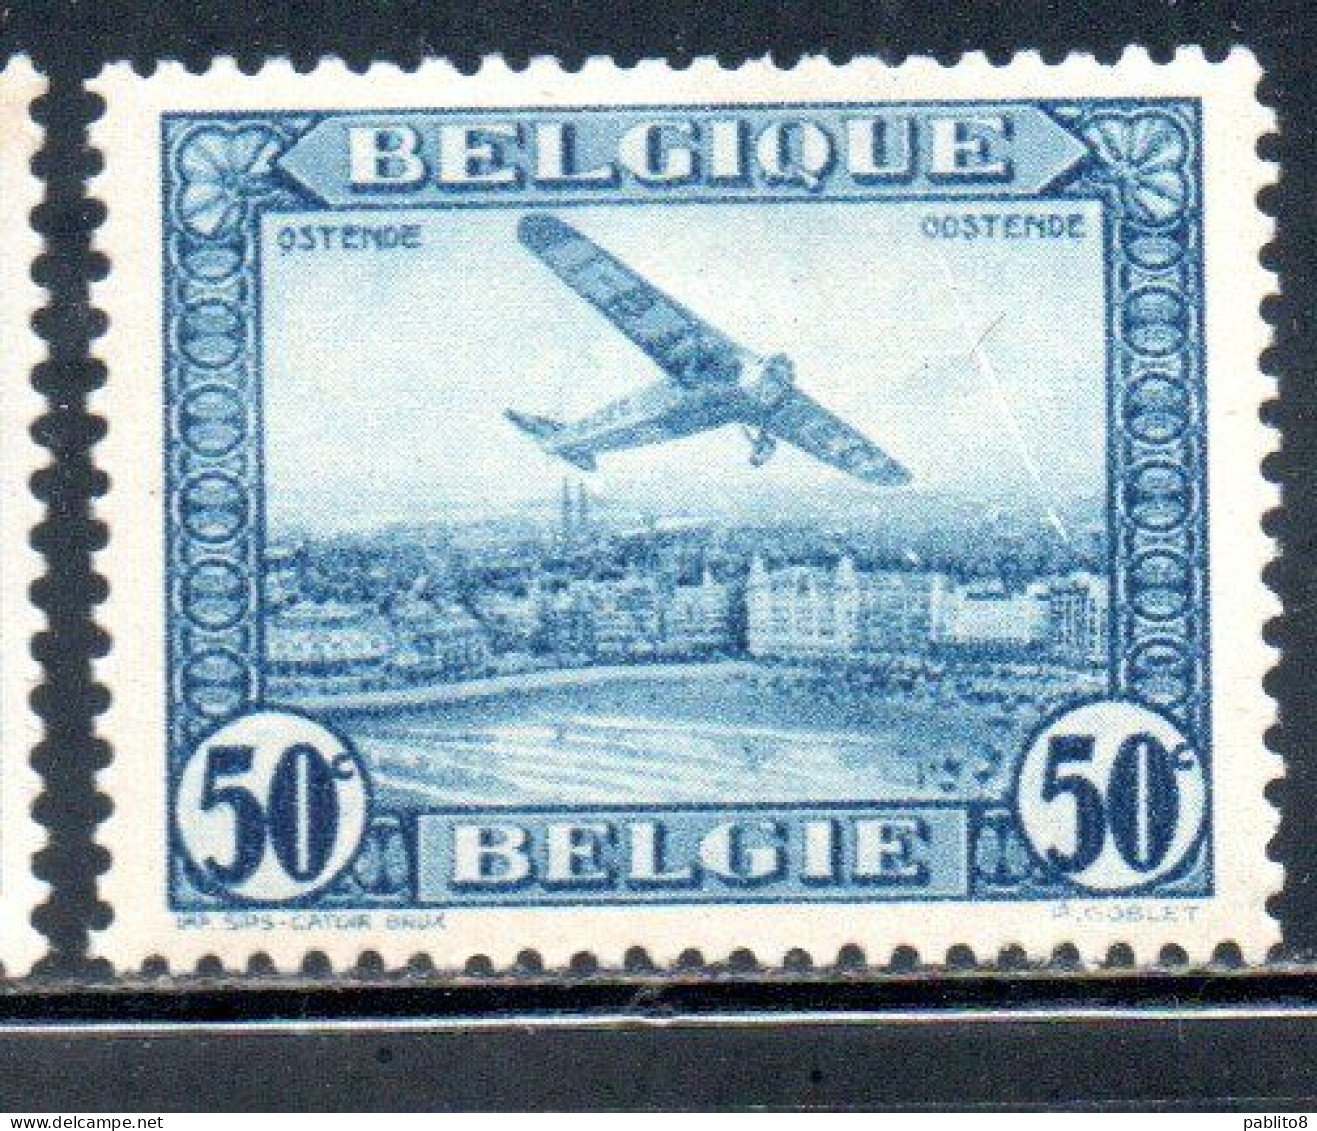 BELGIQUE BELGIE BELGIO BELGIUM 1930 AIR POST MAIL STAMP AIRMAIL FOKKER FVII/3m OVER OSTEND 50c MH - Ungebraucht